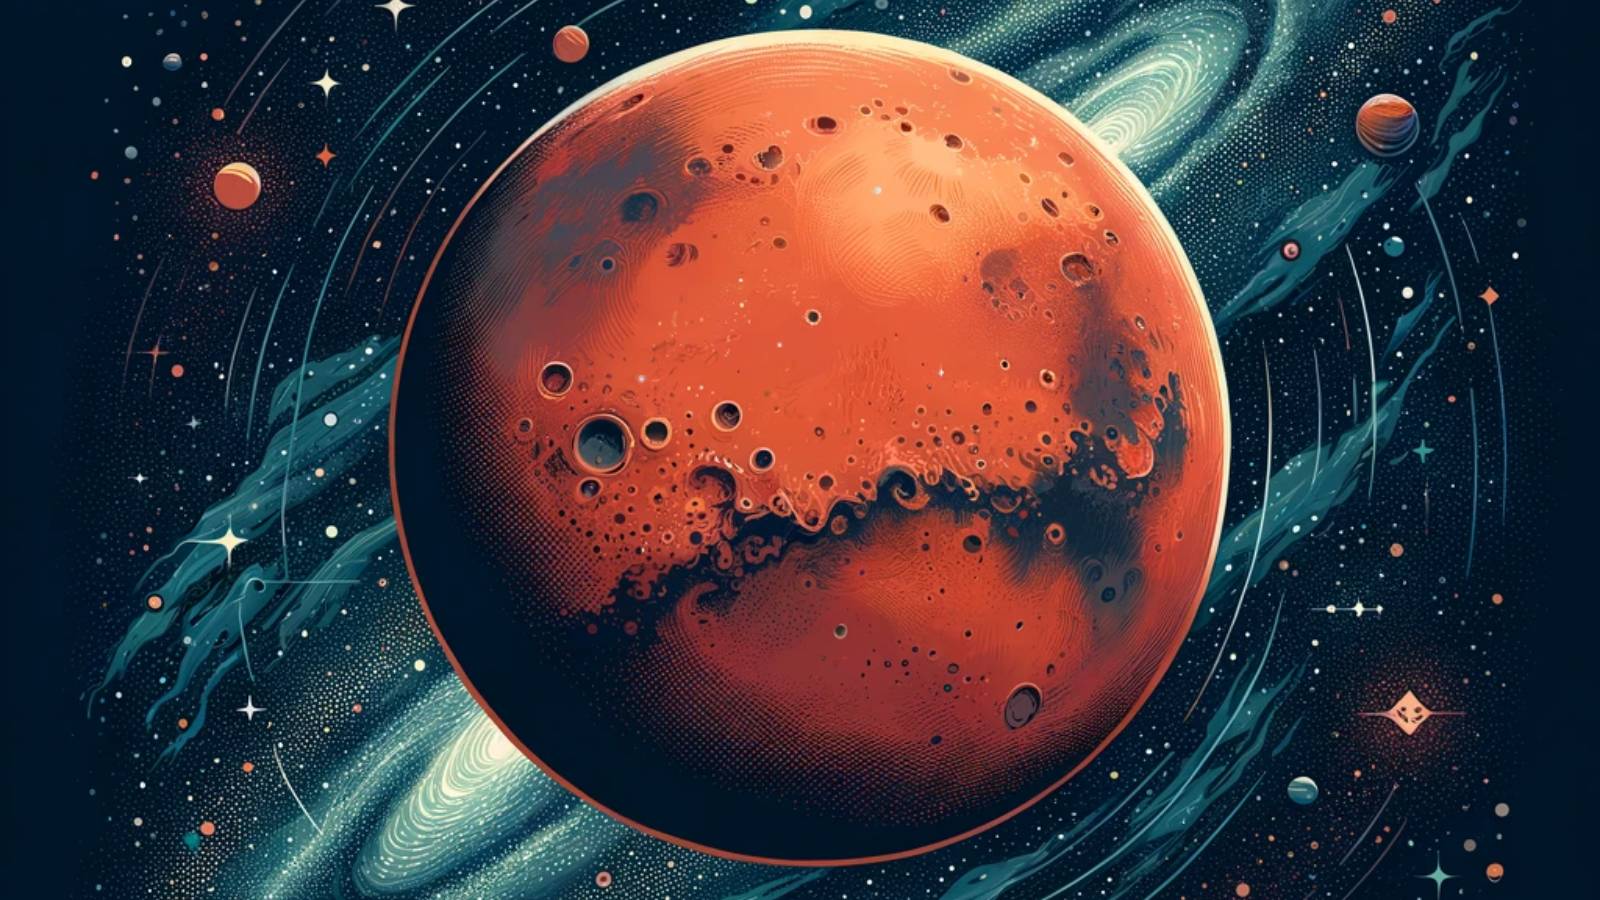 Planeet Mars-missie brengt GEWELDIGE ontdekking voor de mensheid